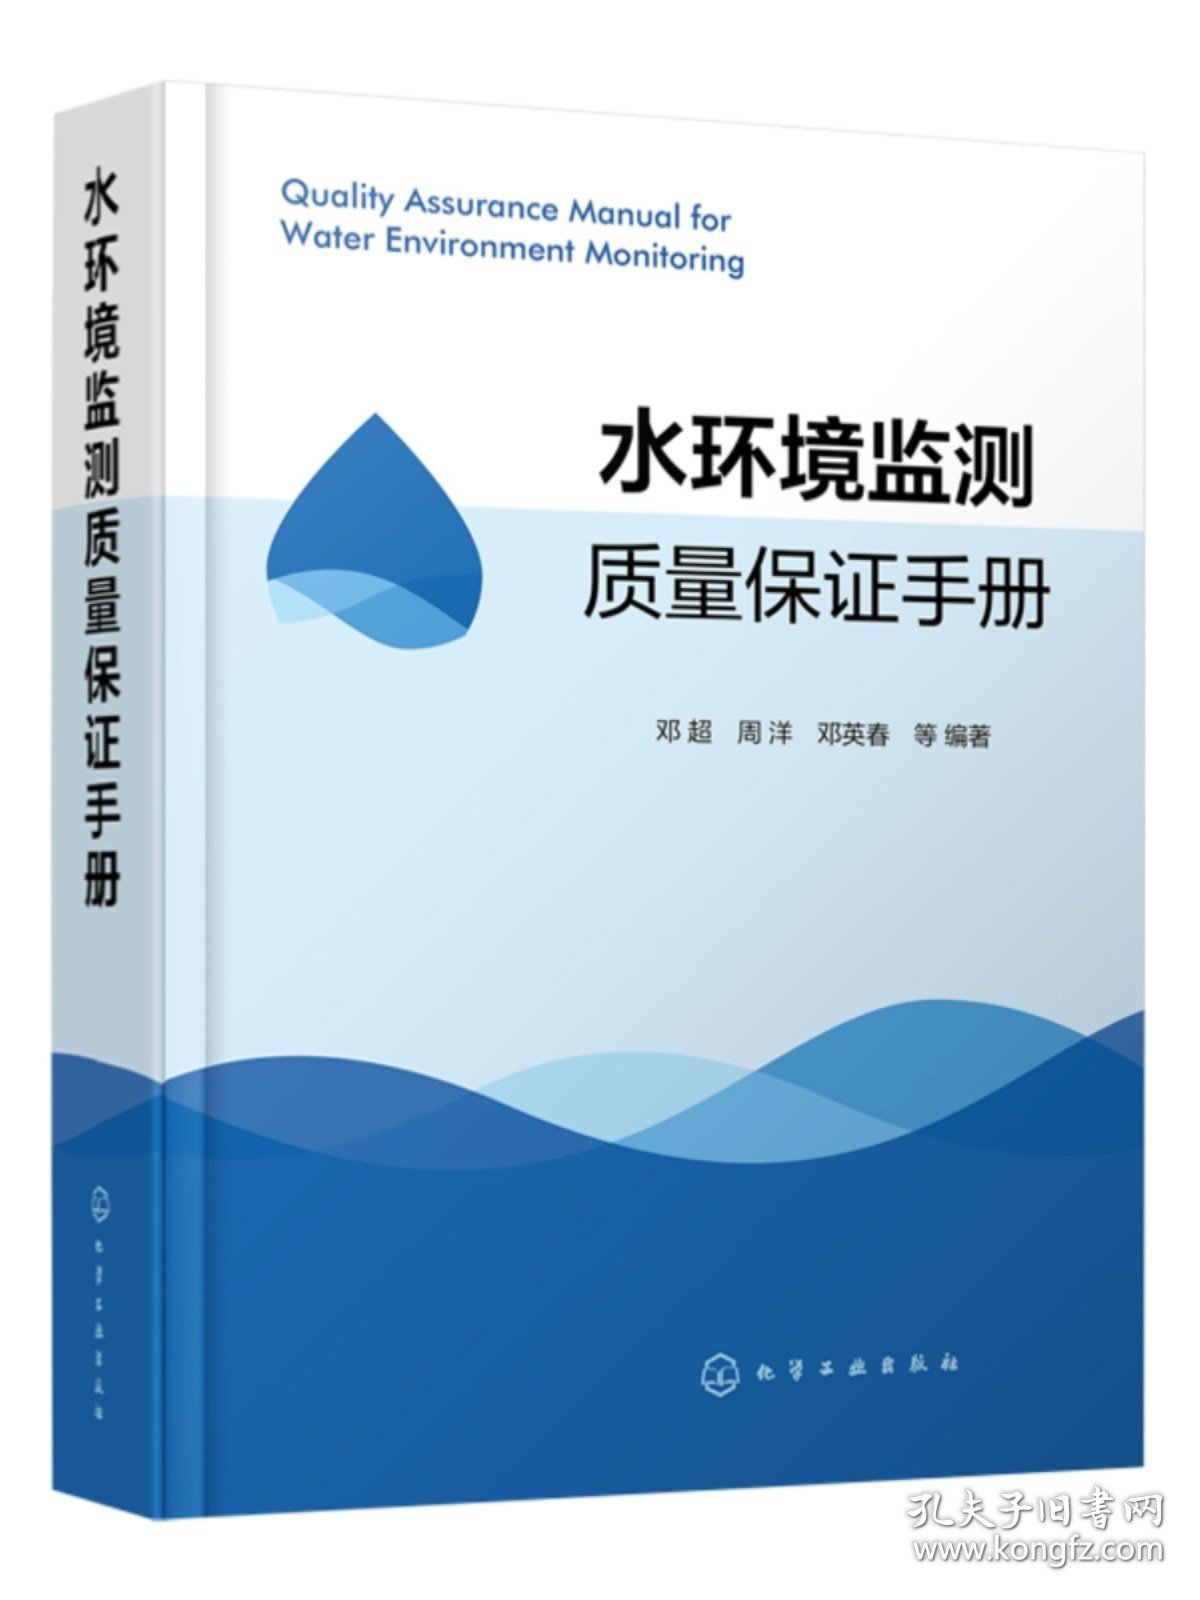 套装2本 水环境监测质量保证手册/生态环境监测管理工作手册 环境水质监测质量保障 书籍